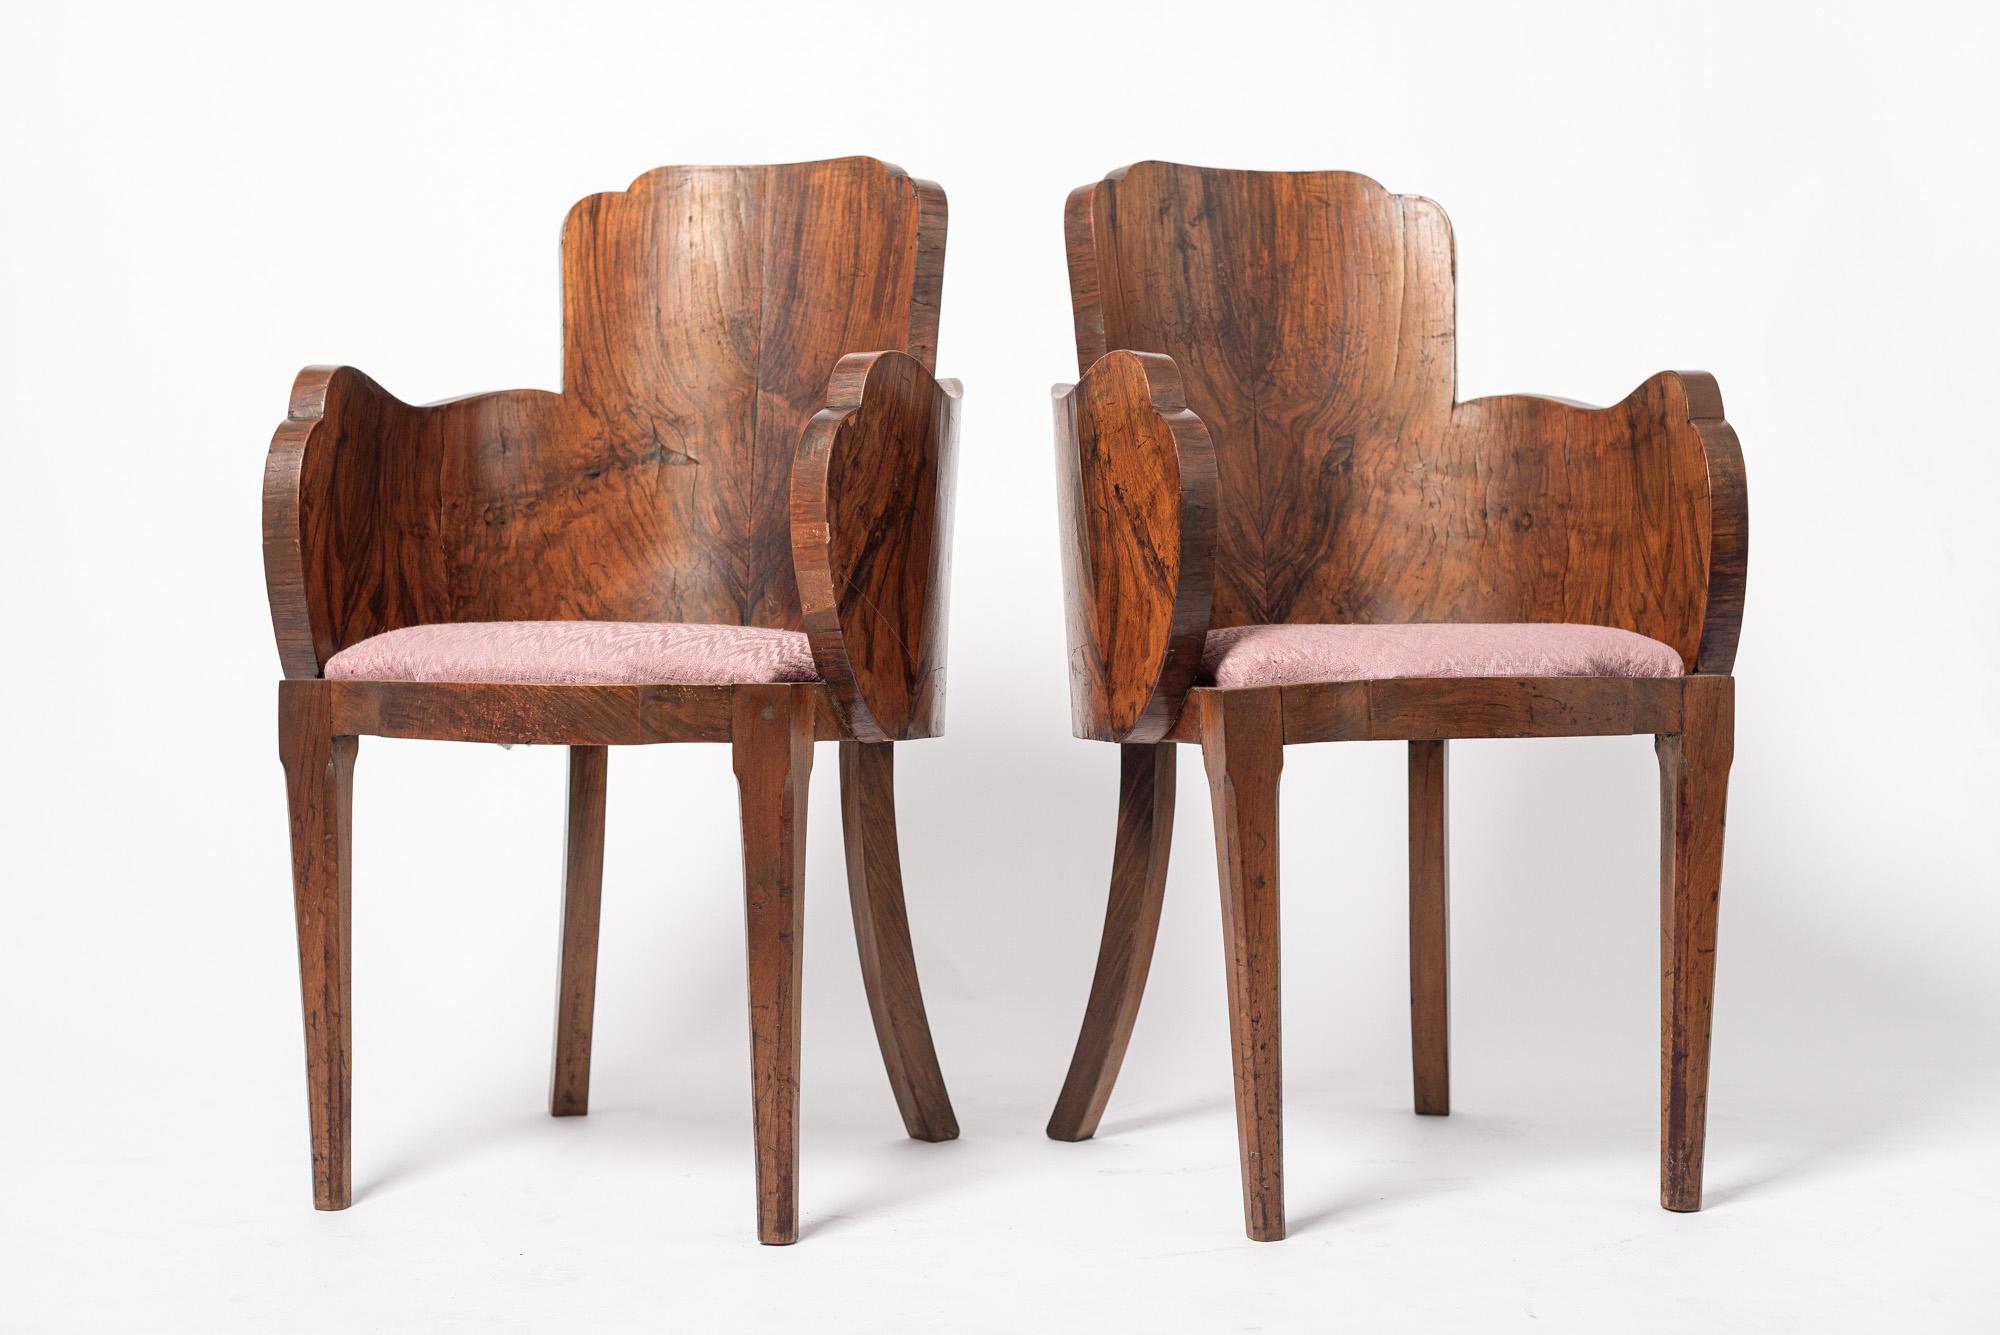 Cette paire exceptionnelle de chaises de salle à manger ou de salon Art déco vers 1930 présente un design unique et élégant avec un dossier arrondi en forme de tonneau et des accoudoirs avec un bord incurvé et festonné distinctif. Fabriquées à la